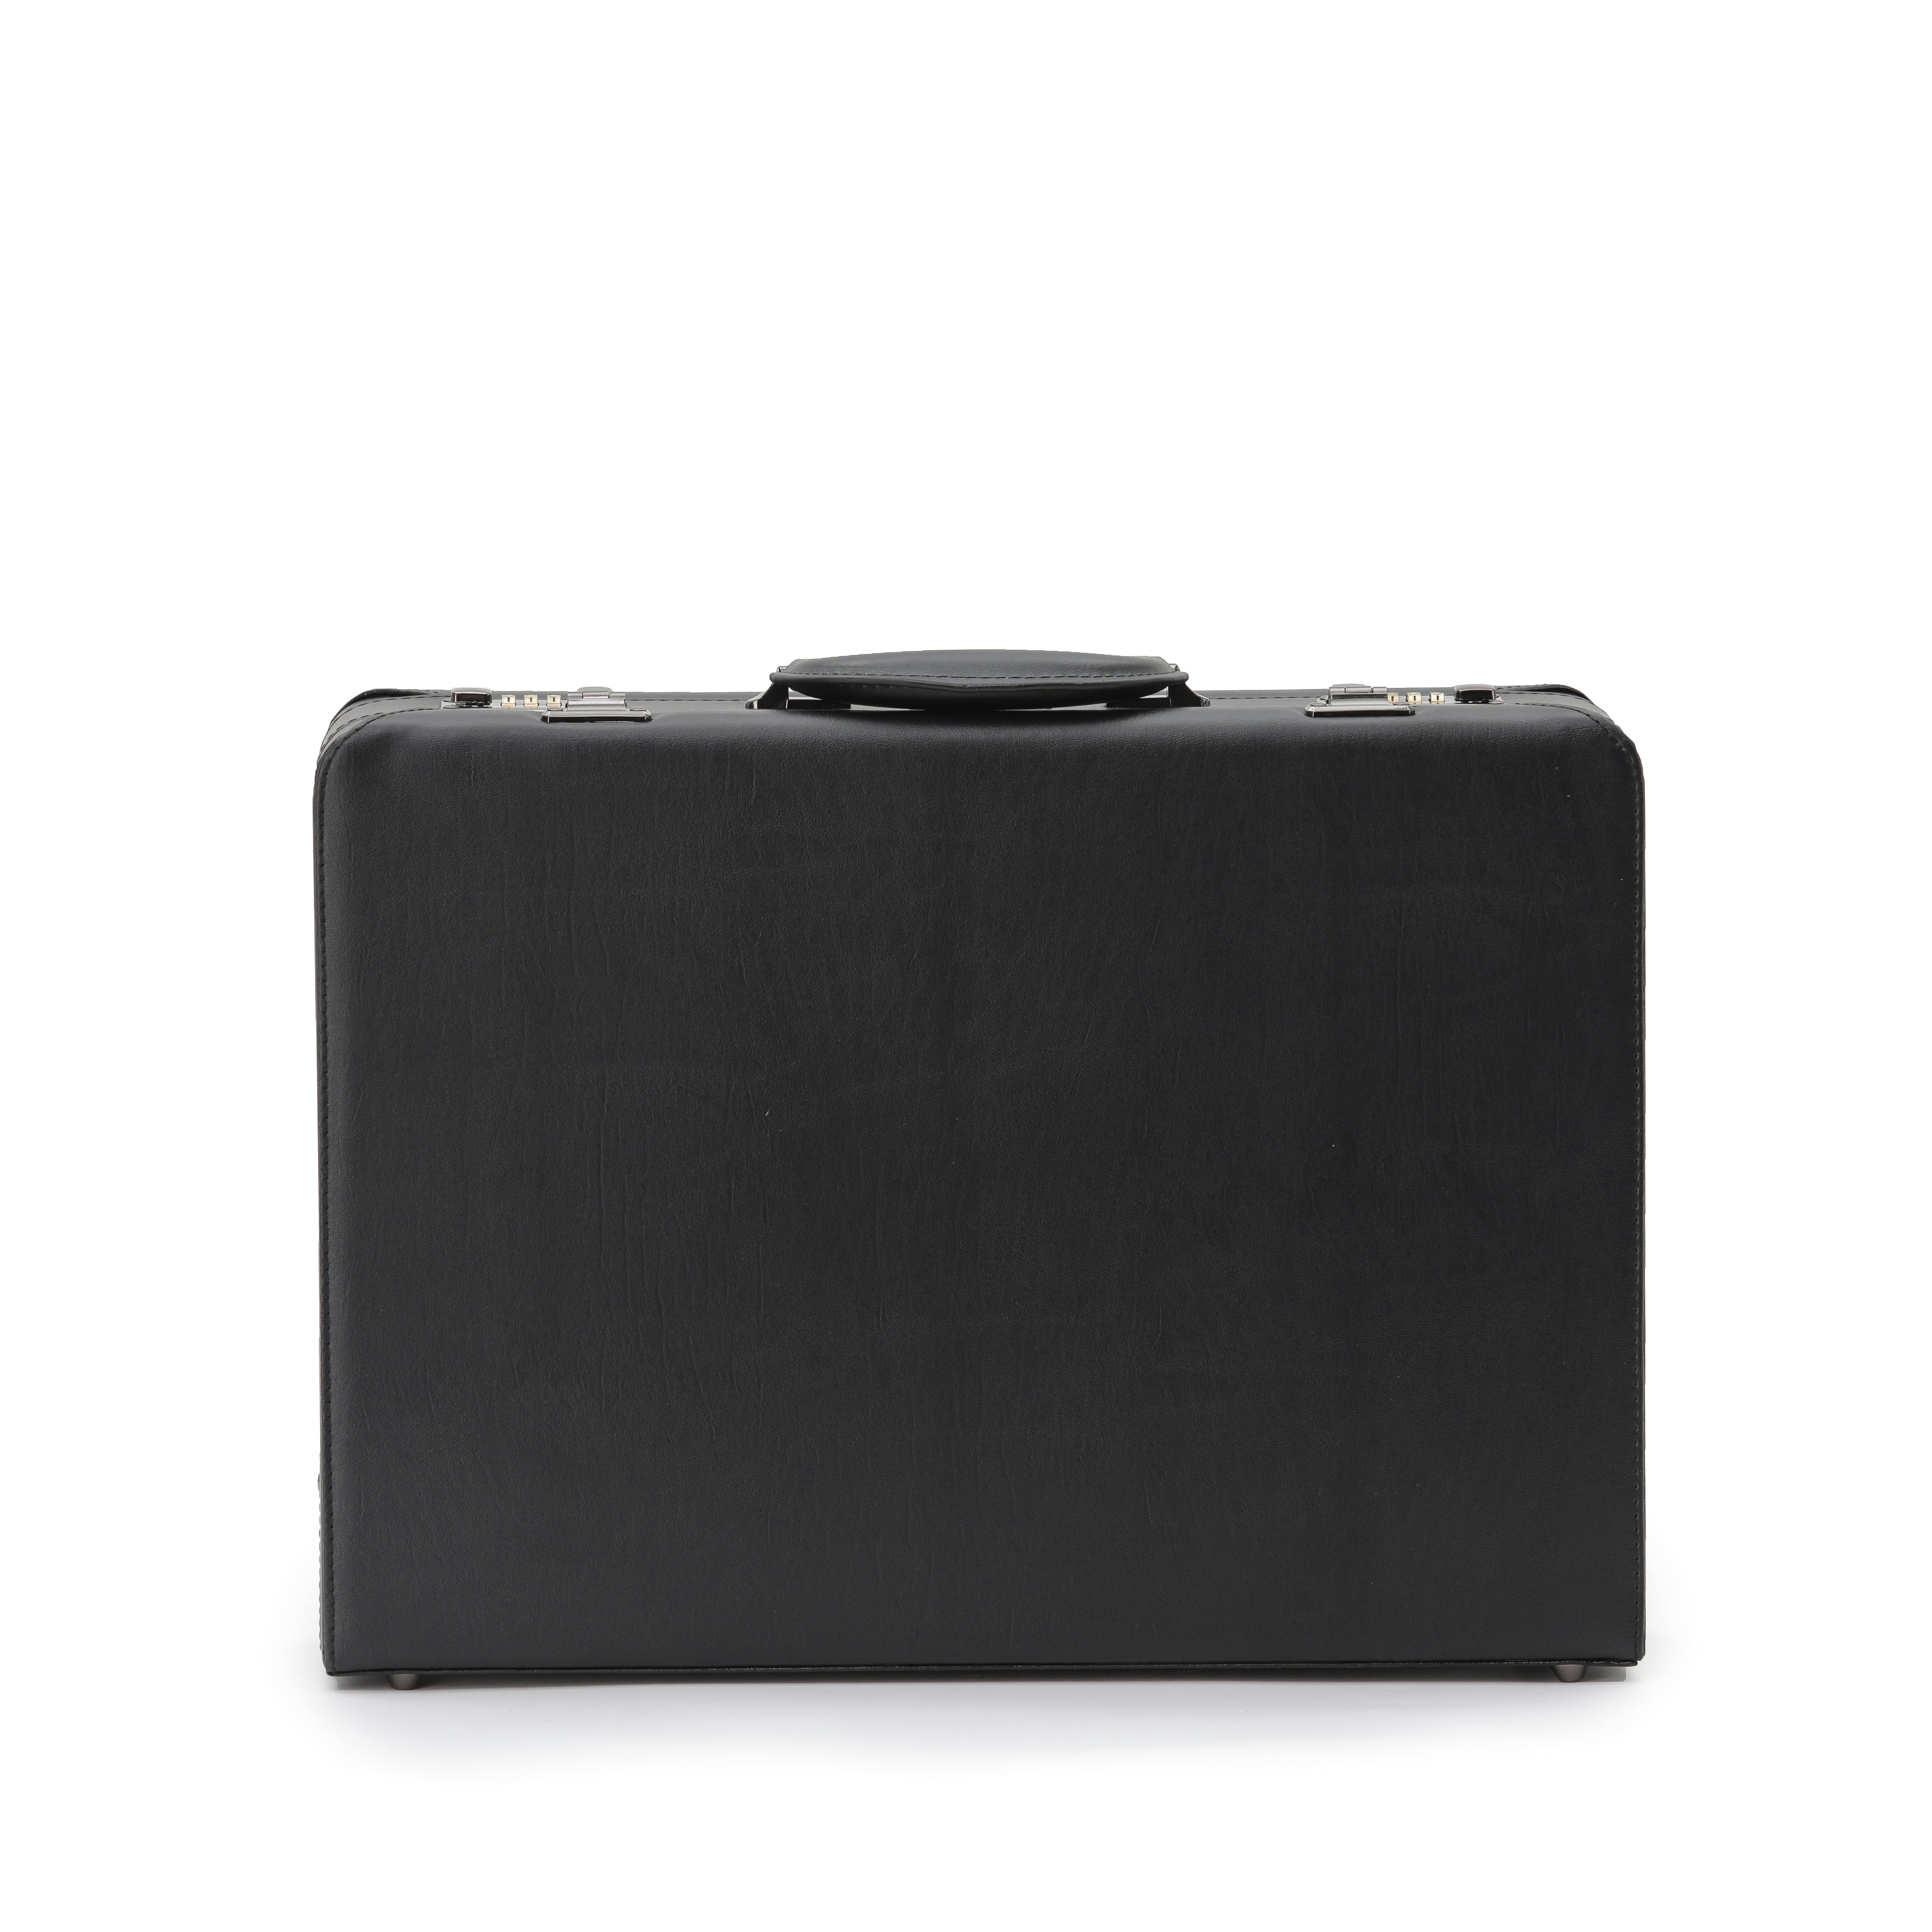 Tosca - TCA2605 attache briefcase - Black-3